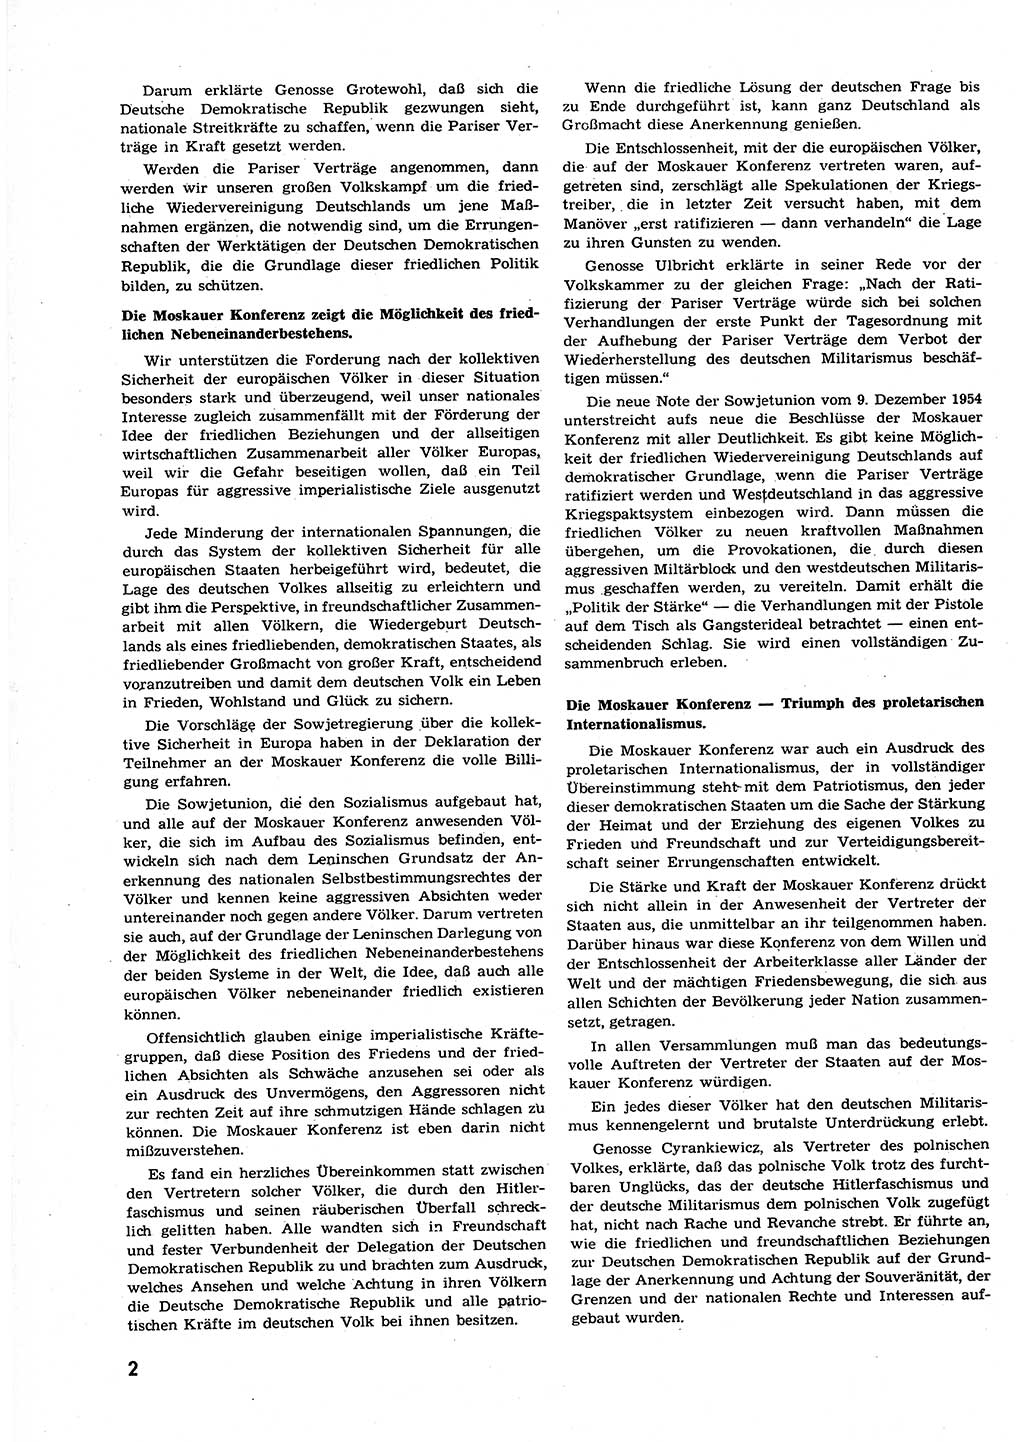 Neuer Weg (NW), Organ des Zentralkomitees (ZK) der SED (Sozialistische Einheitspartei Deutschlands) für alle Parteiarbeiter, 9. Jahrgang [Deutsche Demokratische Republik (DDR)] 1954, Heft 23/2 (NW ZK SED DDR 1954, H. 23/2)